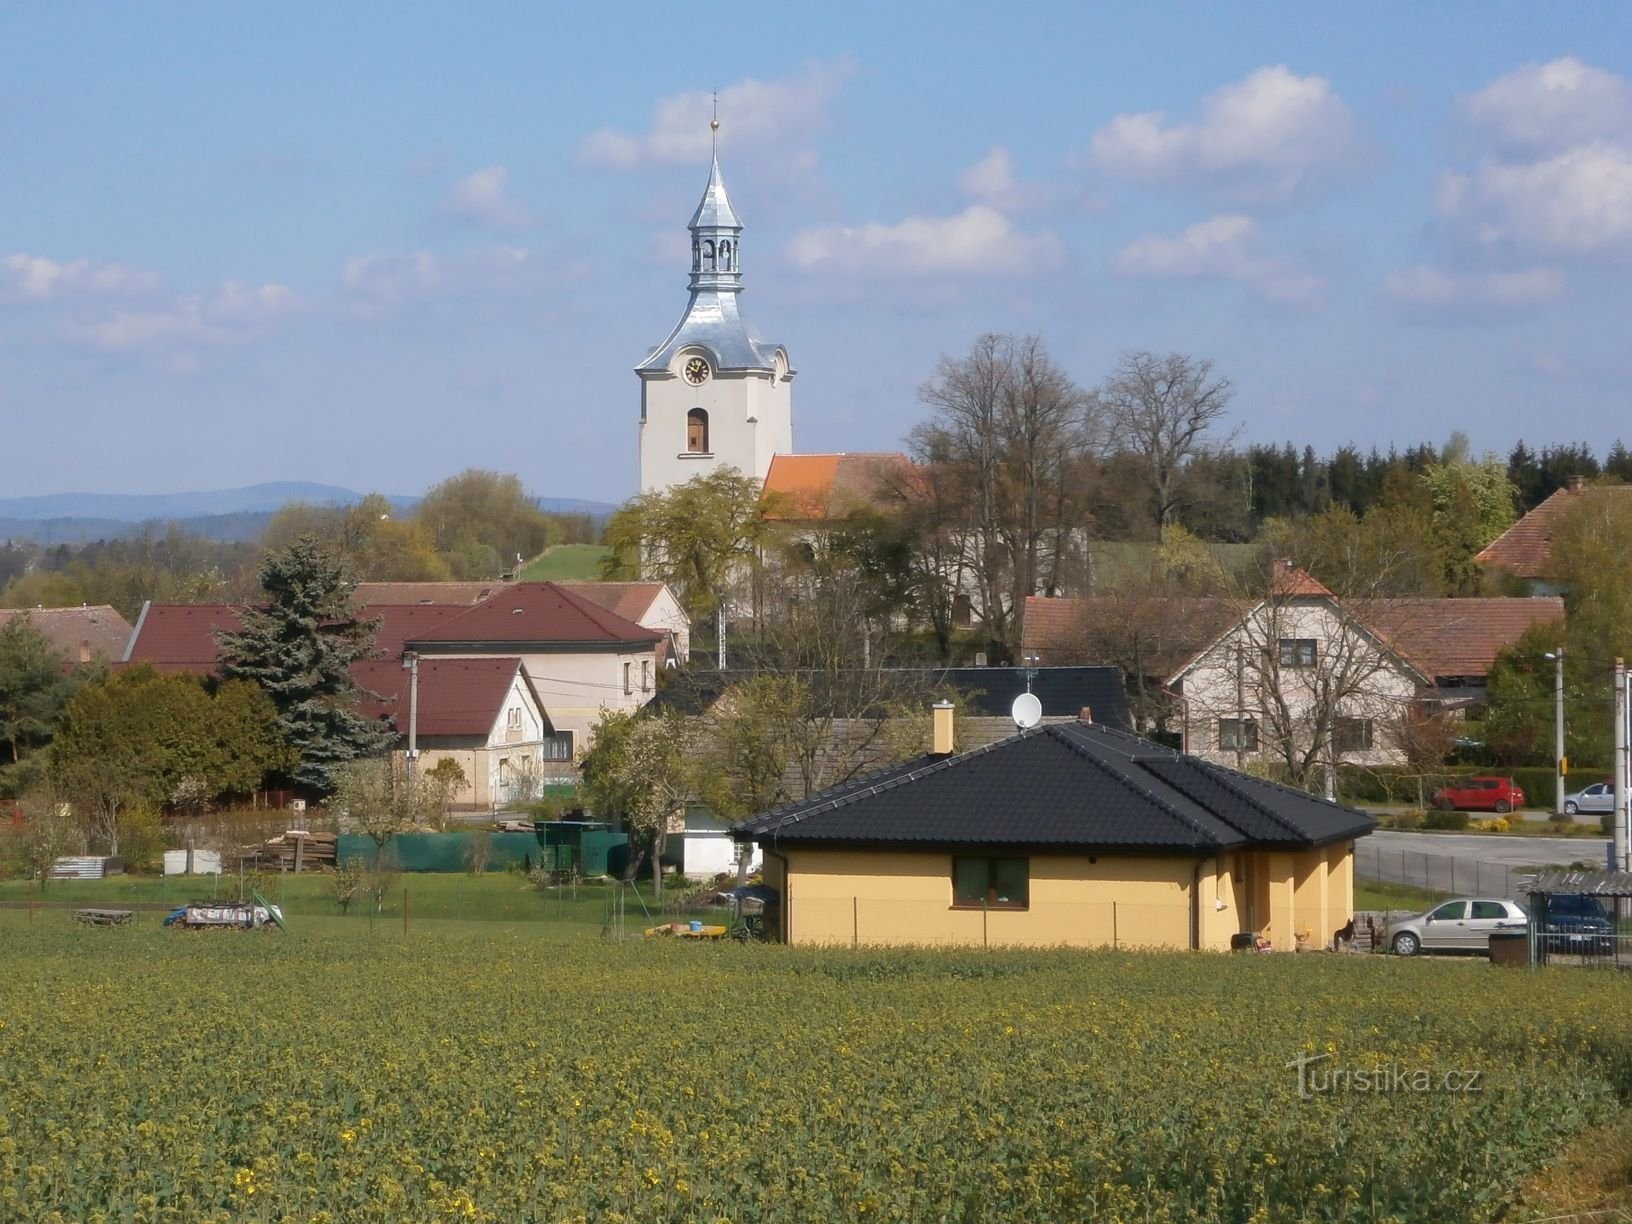 Blick auf Číbuz vom Friedhof (30.4.2017. April XNUMX)